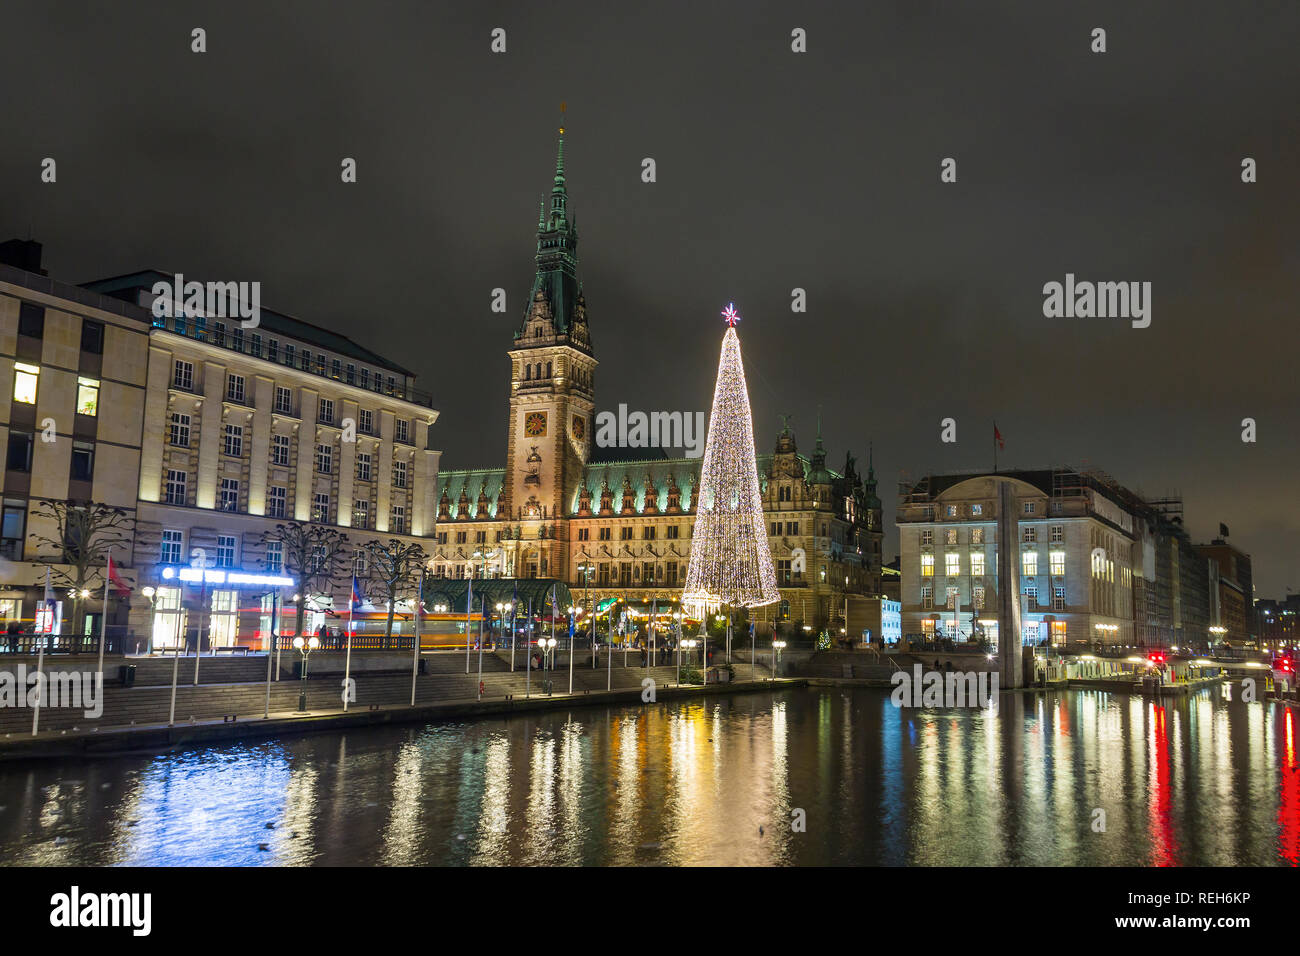 Hôtel de ville de Hambourg, l'Alster, et l'arbre de Noël dans la soirée, Allemagne Banque D'Images